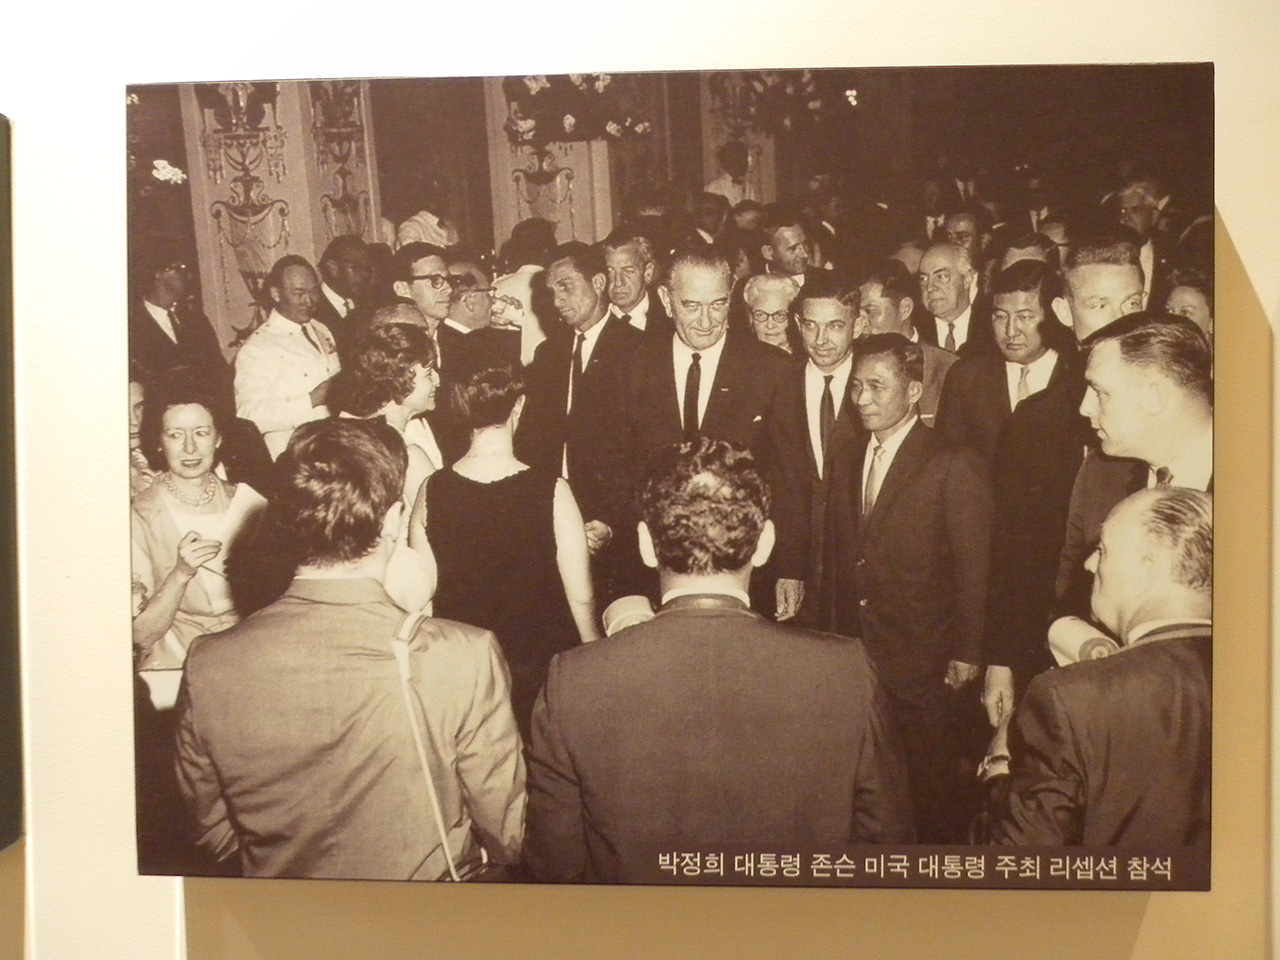 박정희 대통령과의 연회에 참석한 린든 존슨 대통령(가운데). 서울시 마포구 상암동의 박정희대통령기념도서관에서 찍은 사진. 